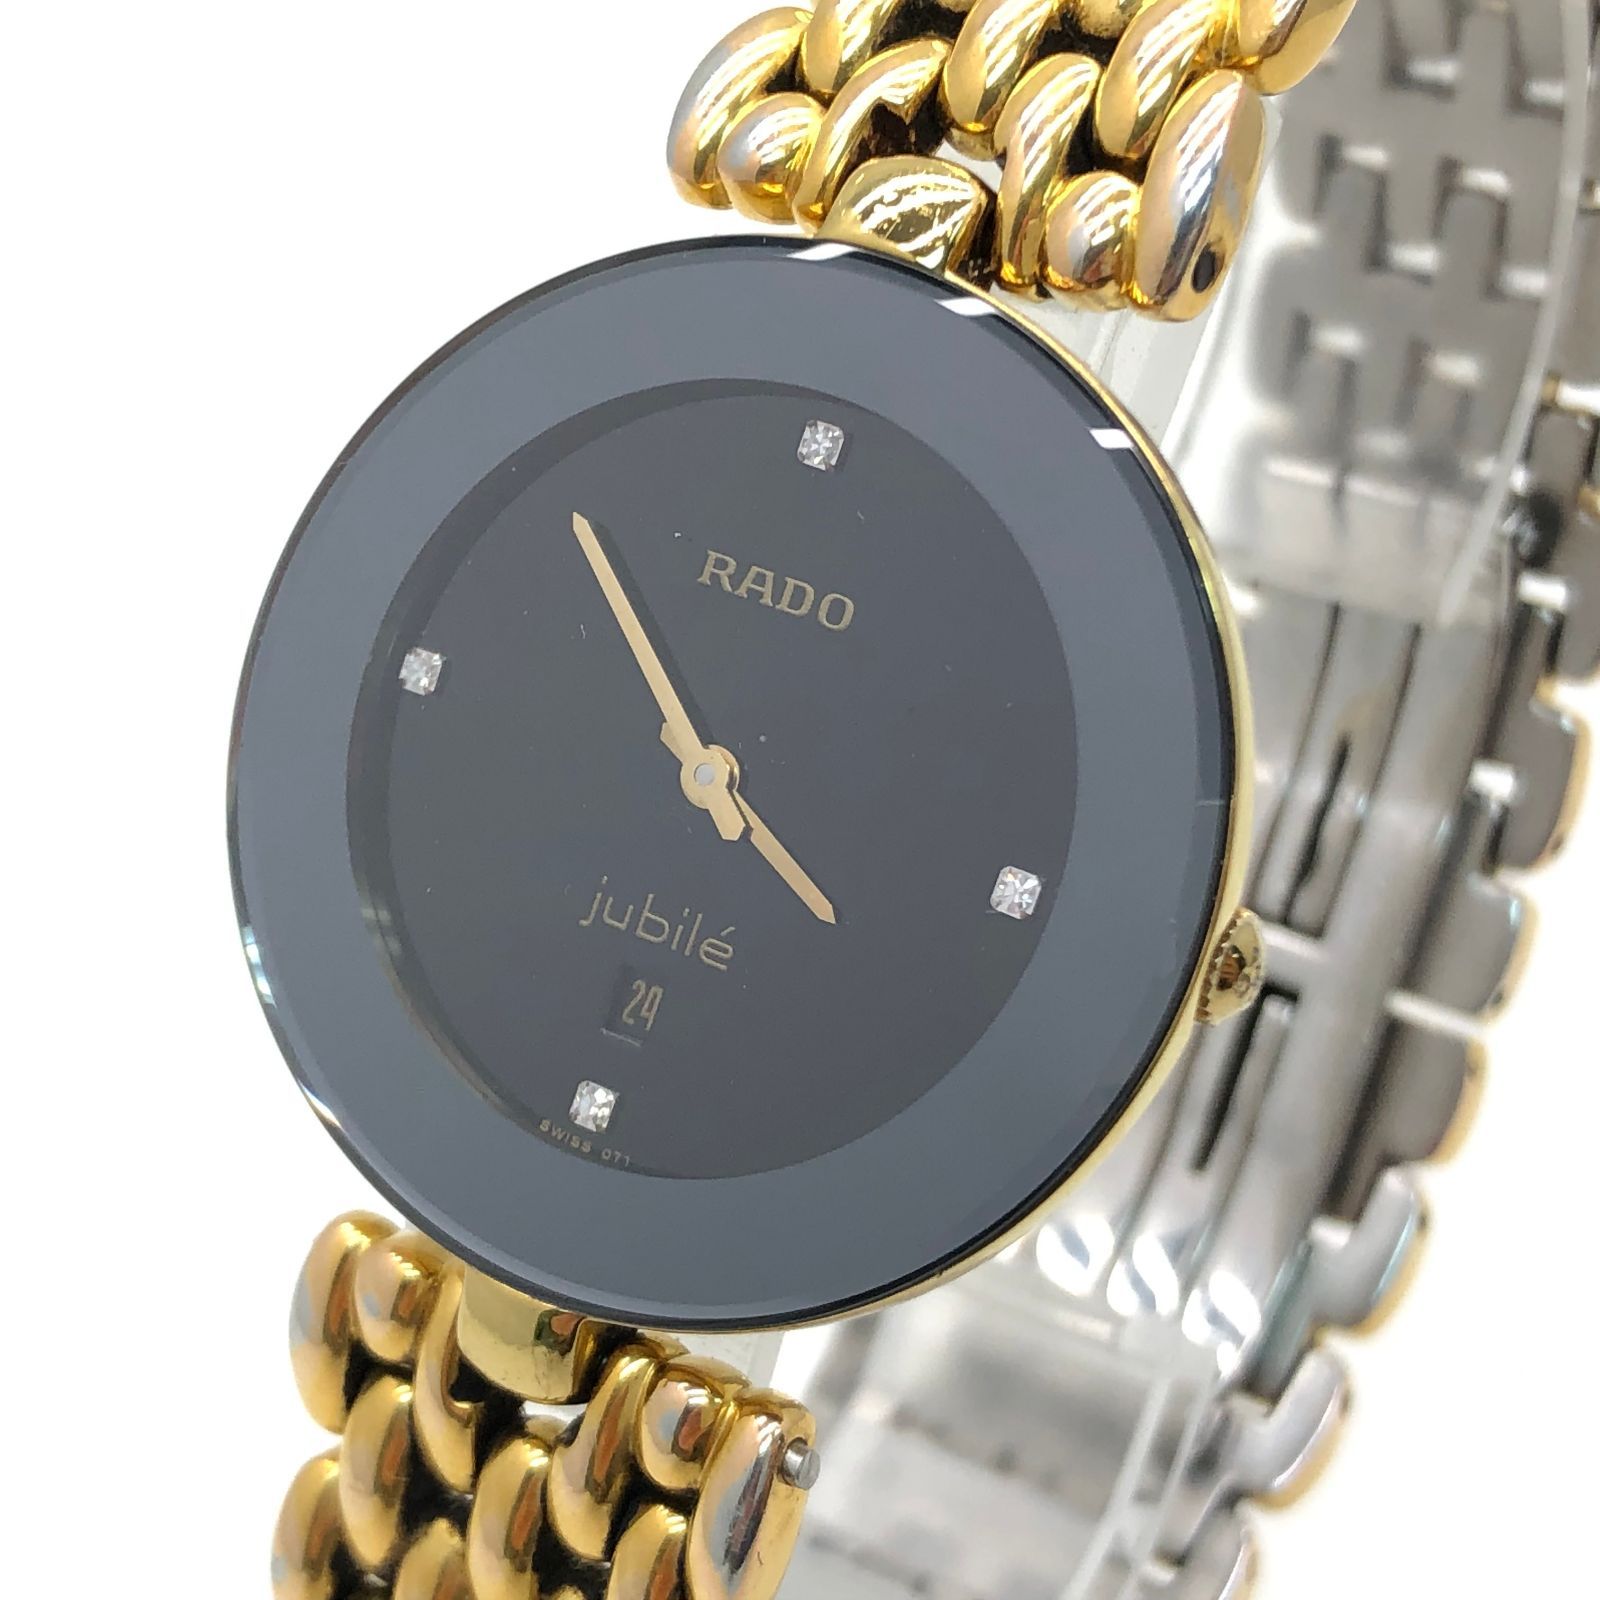 【RADO jubile】ラドージュビリーメンズ腕時計  ブラック